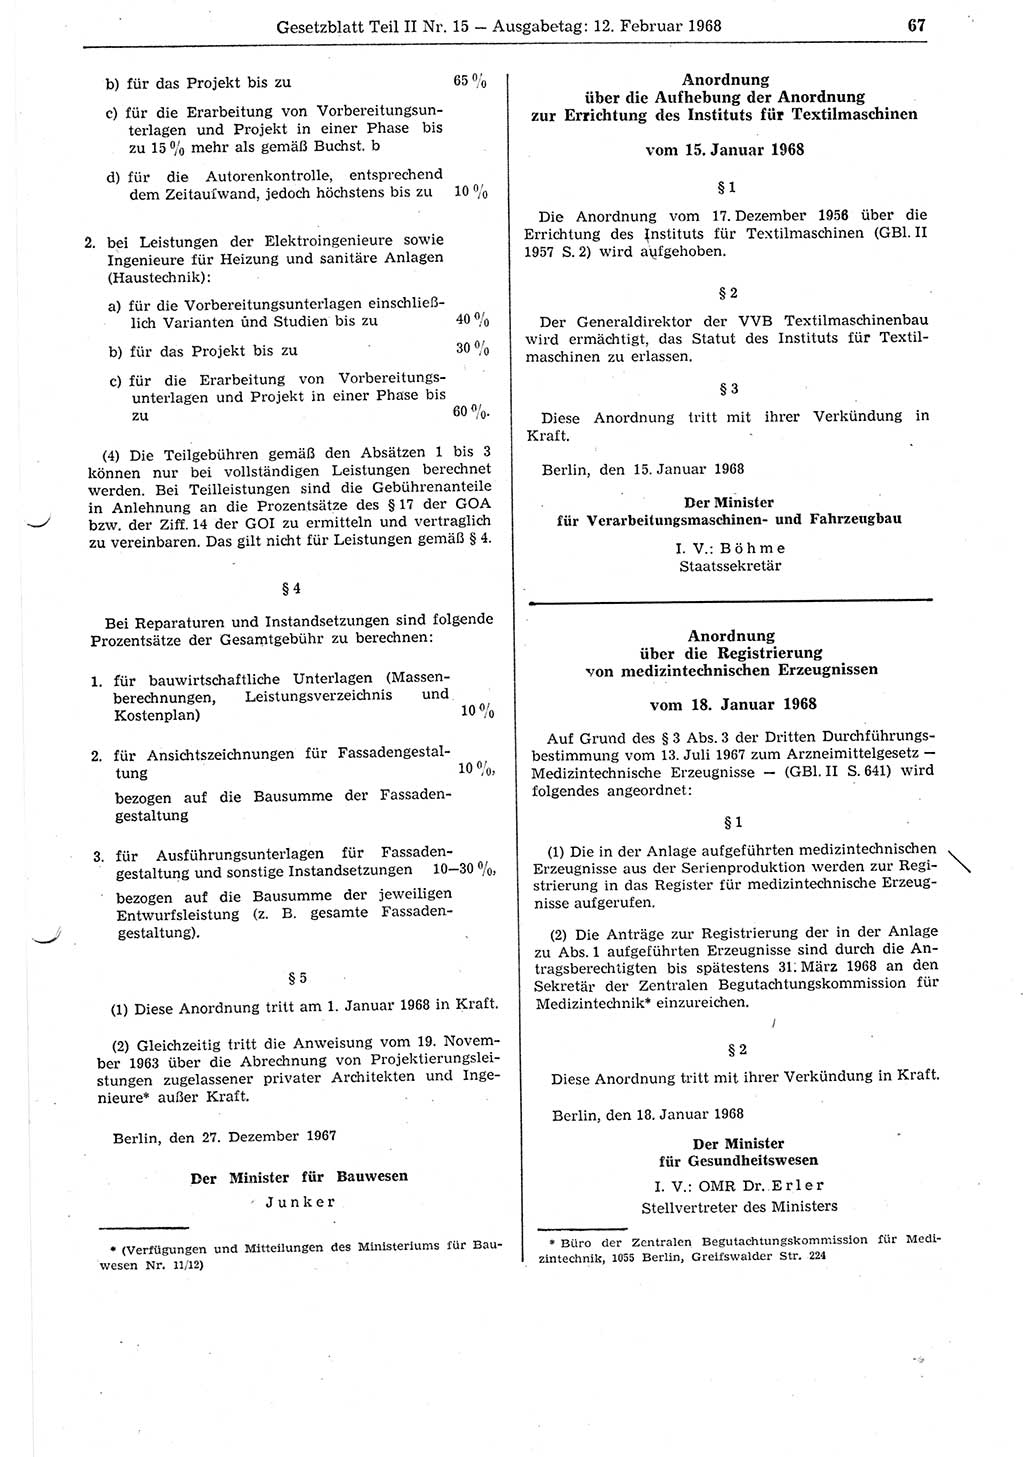 Gesetzblatt (GBl.) der Deutschen Demokratischen Republik (DDR) Teil ⅠⅠ 1968, Seite 67 (GBl. DDR ⅠⅠ 1968, S. 67)